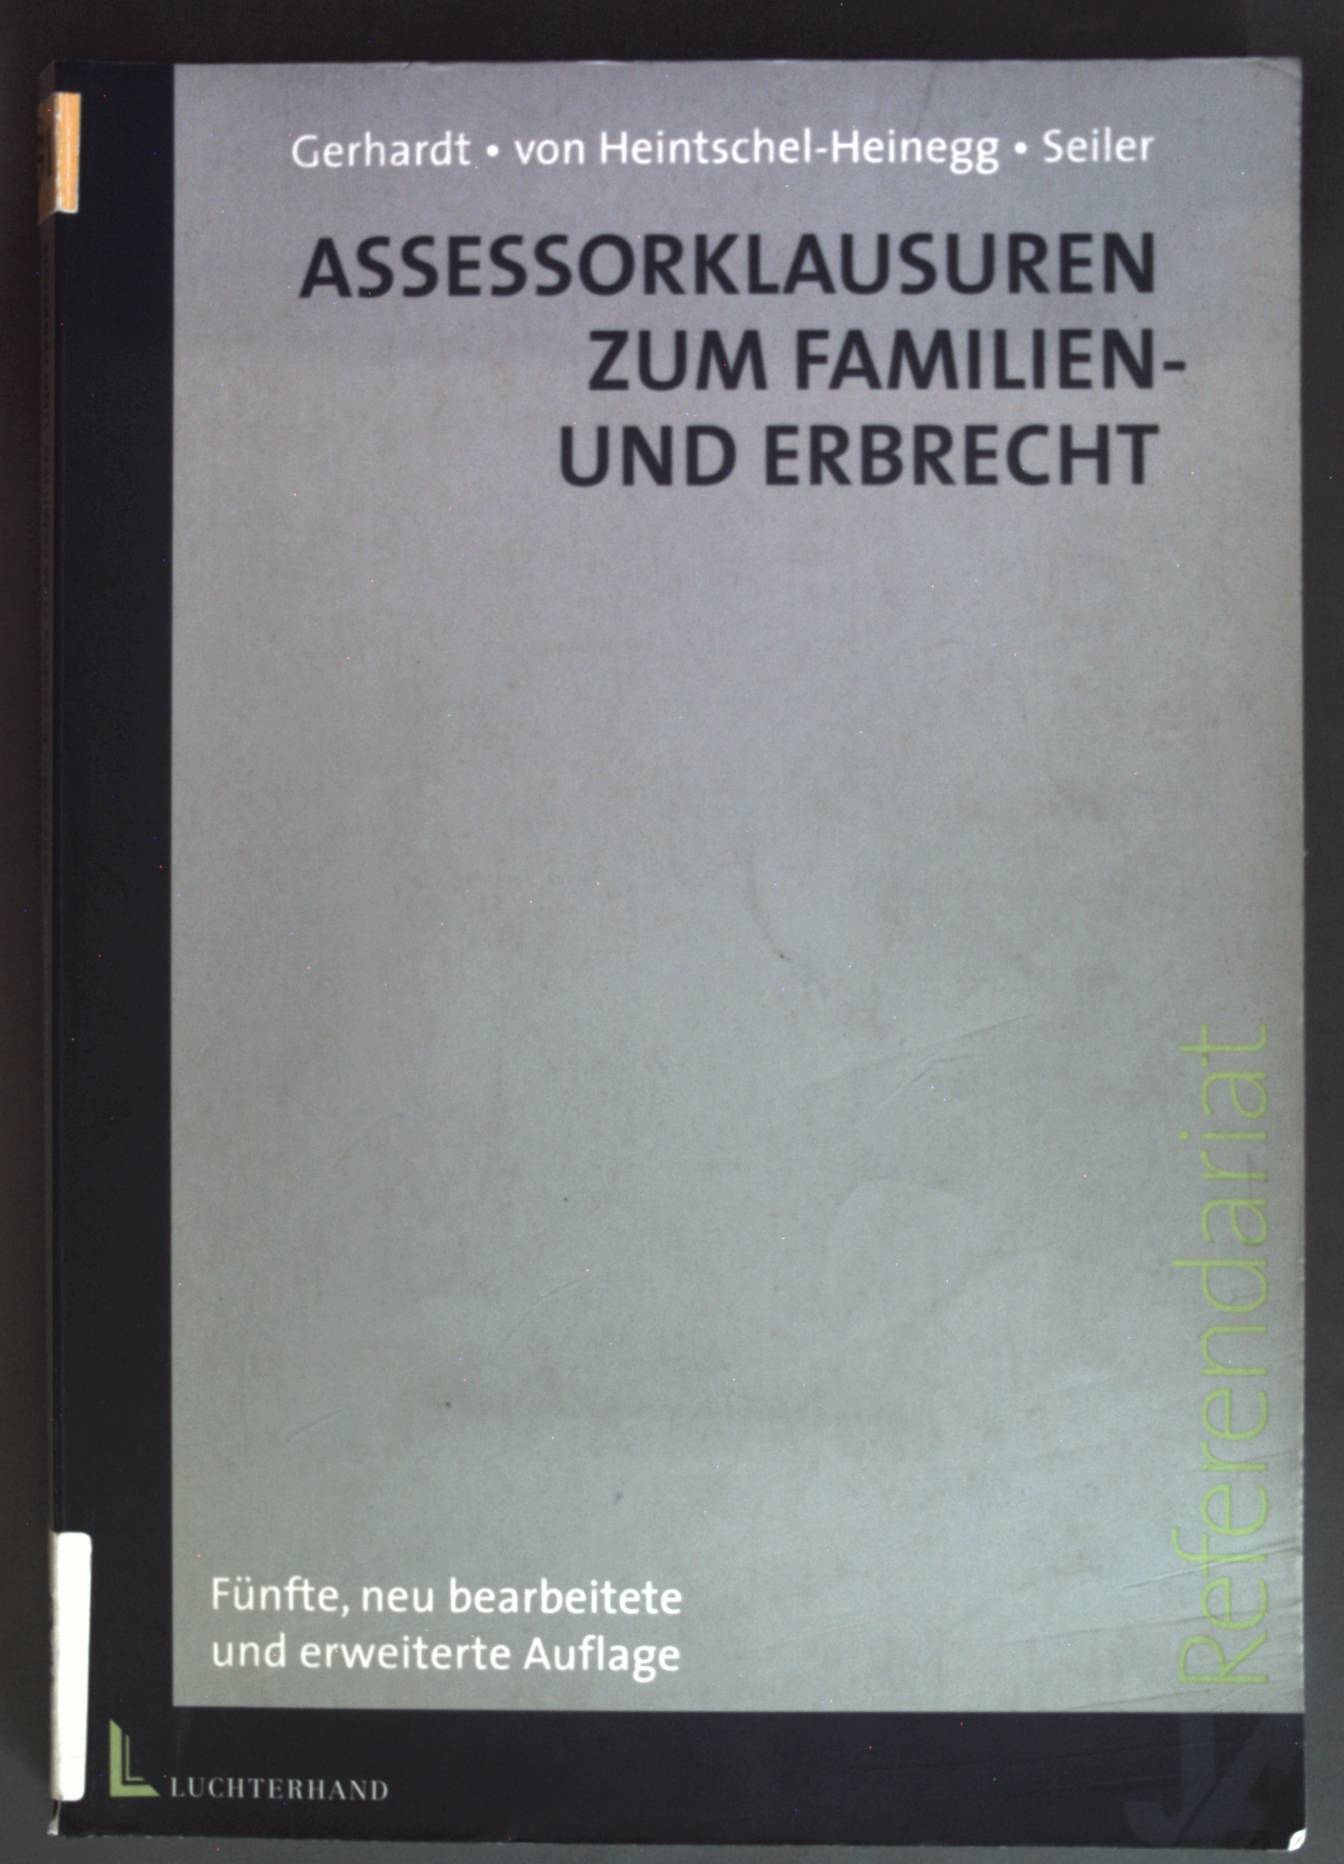 Assessorklausuren zum Familien- und Erbrecht . Assessorexamen. - Heintschel-Heinegg, Bernd von, Peter Gerhardt und Christian Seiler